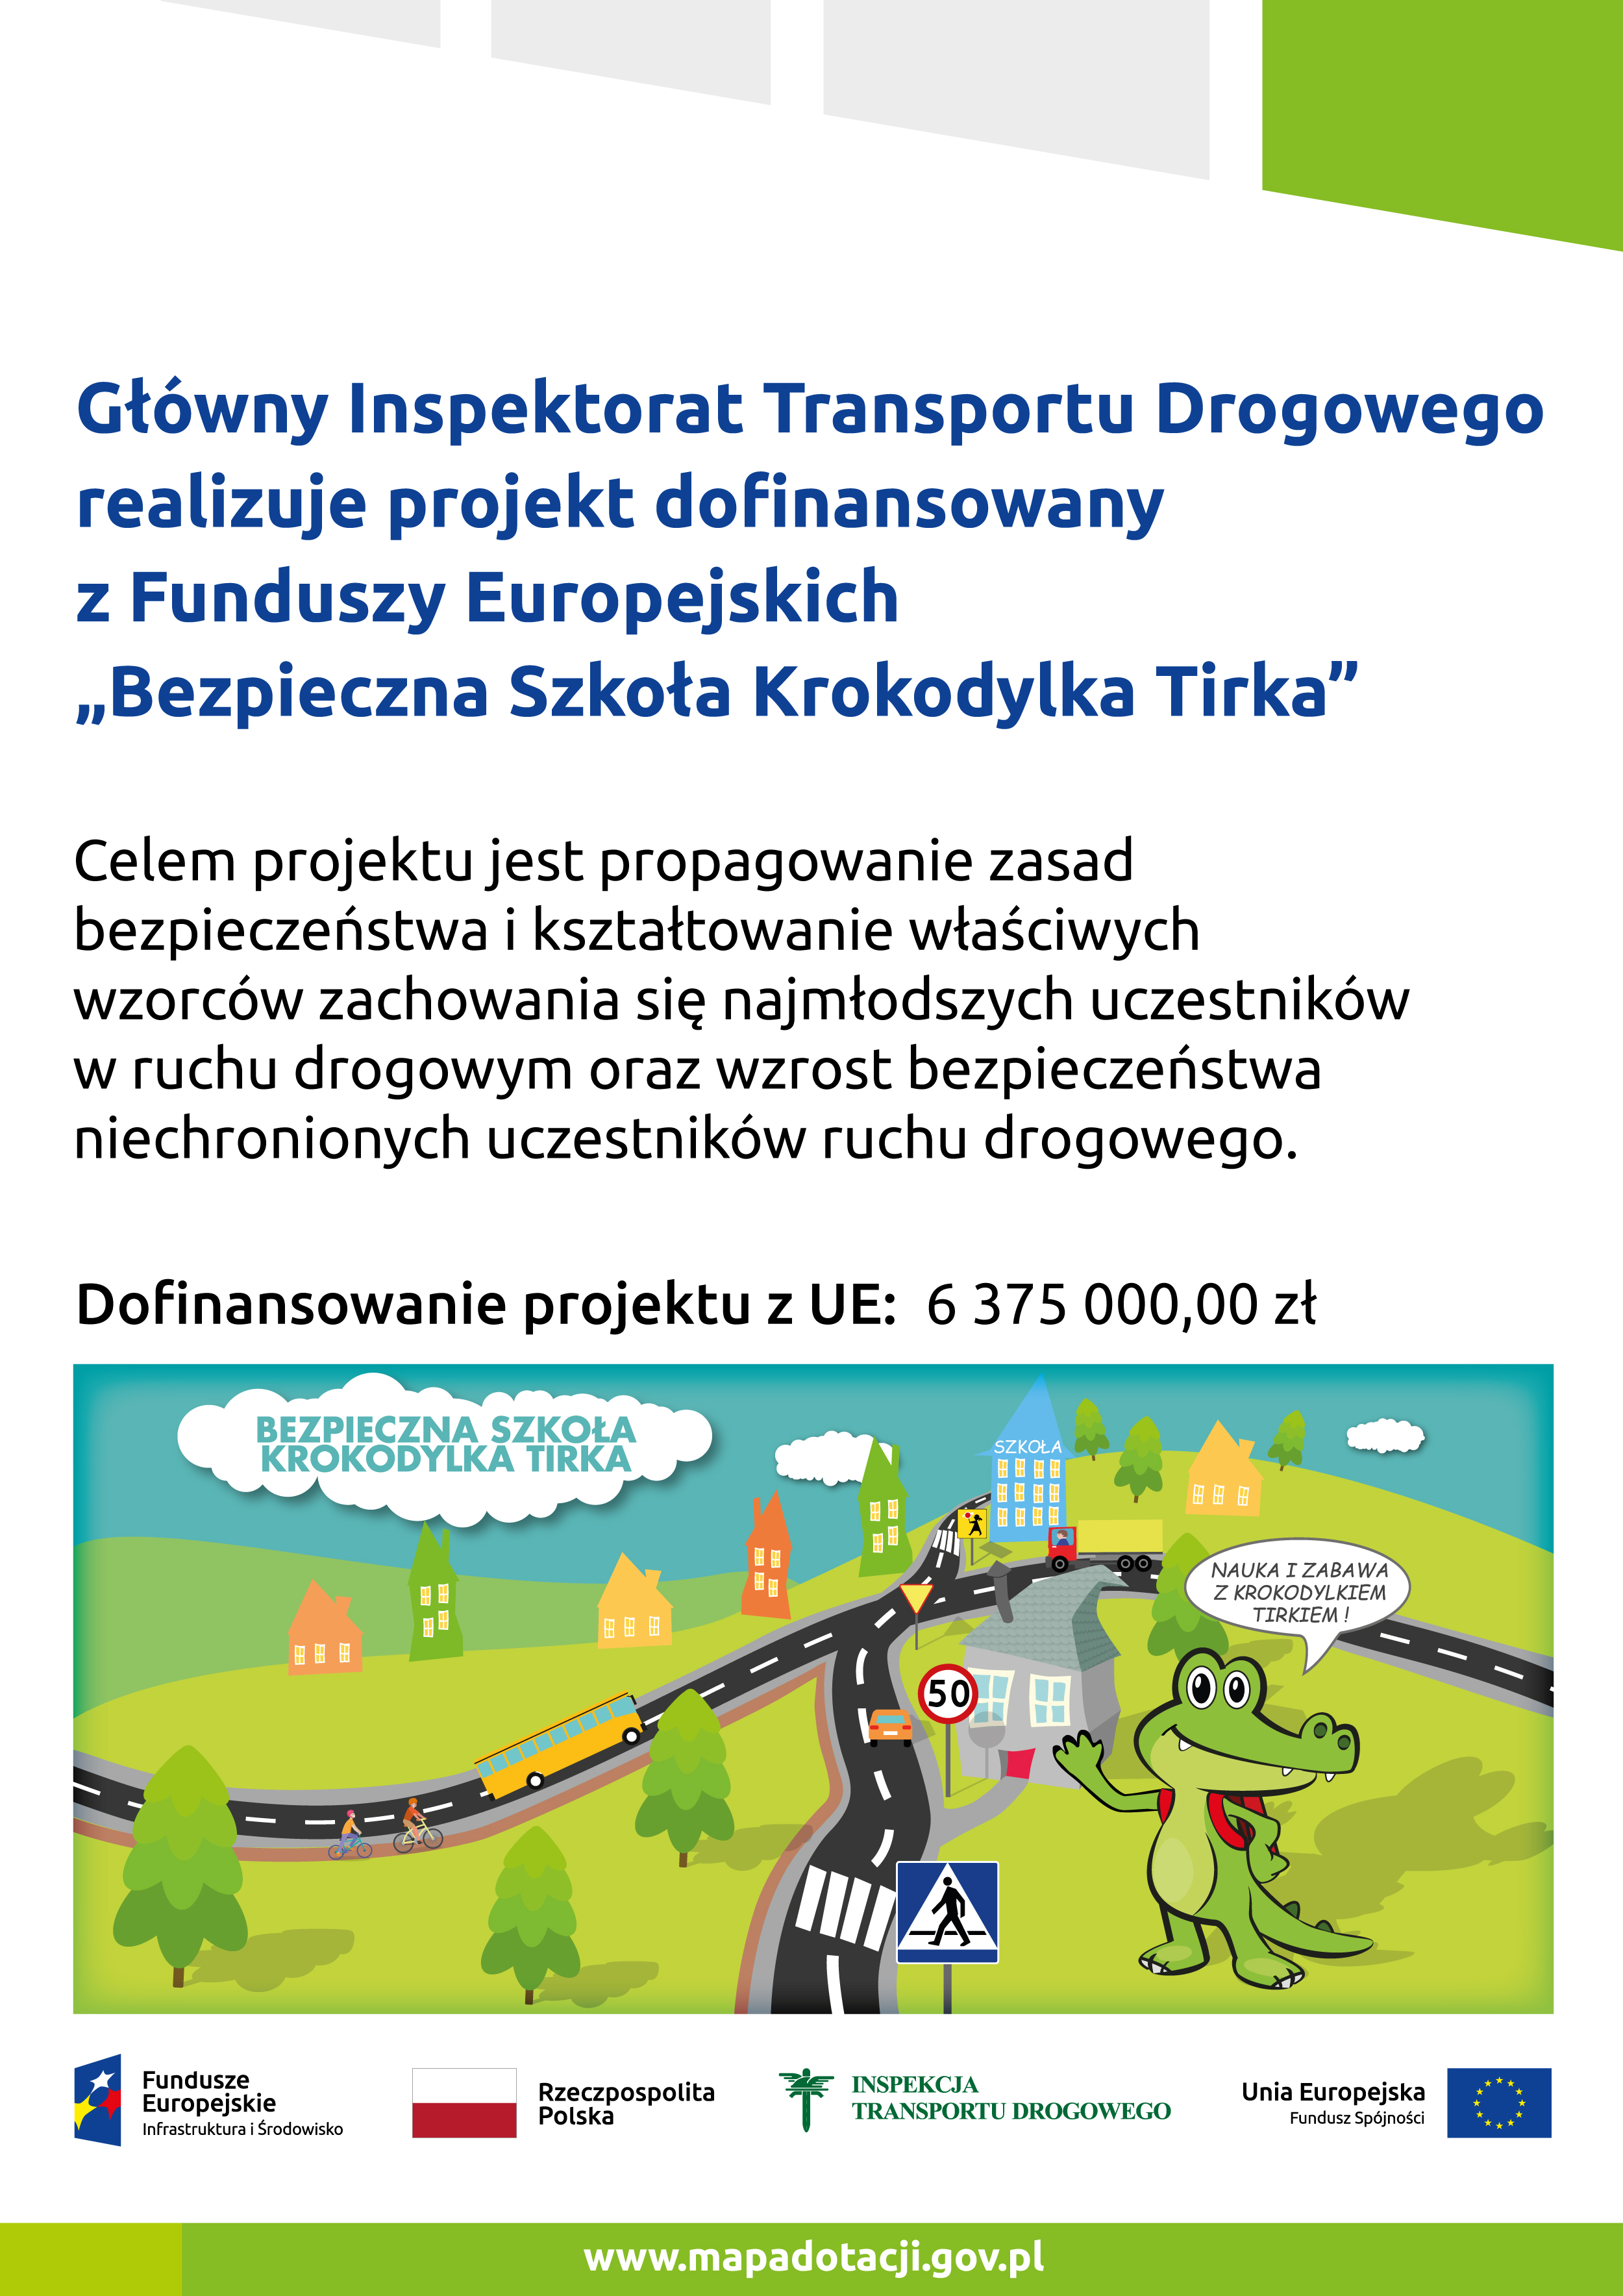 plakat informujący o dofinansowaniu projektu Bezpieczna szkoła Krokodylka z Funduszy Europejskich, w wyskości 6 375 000zł, na plakacie grafika projektu krokodylek Tirek na tle drogi, pod spodem logotypy Fundusze Europejskie Rzeczpospolita Polska Inspekcja Transportu Drogowego Unia Europejska